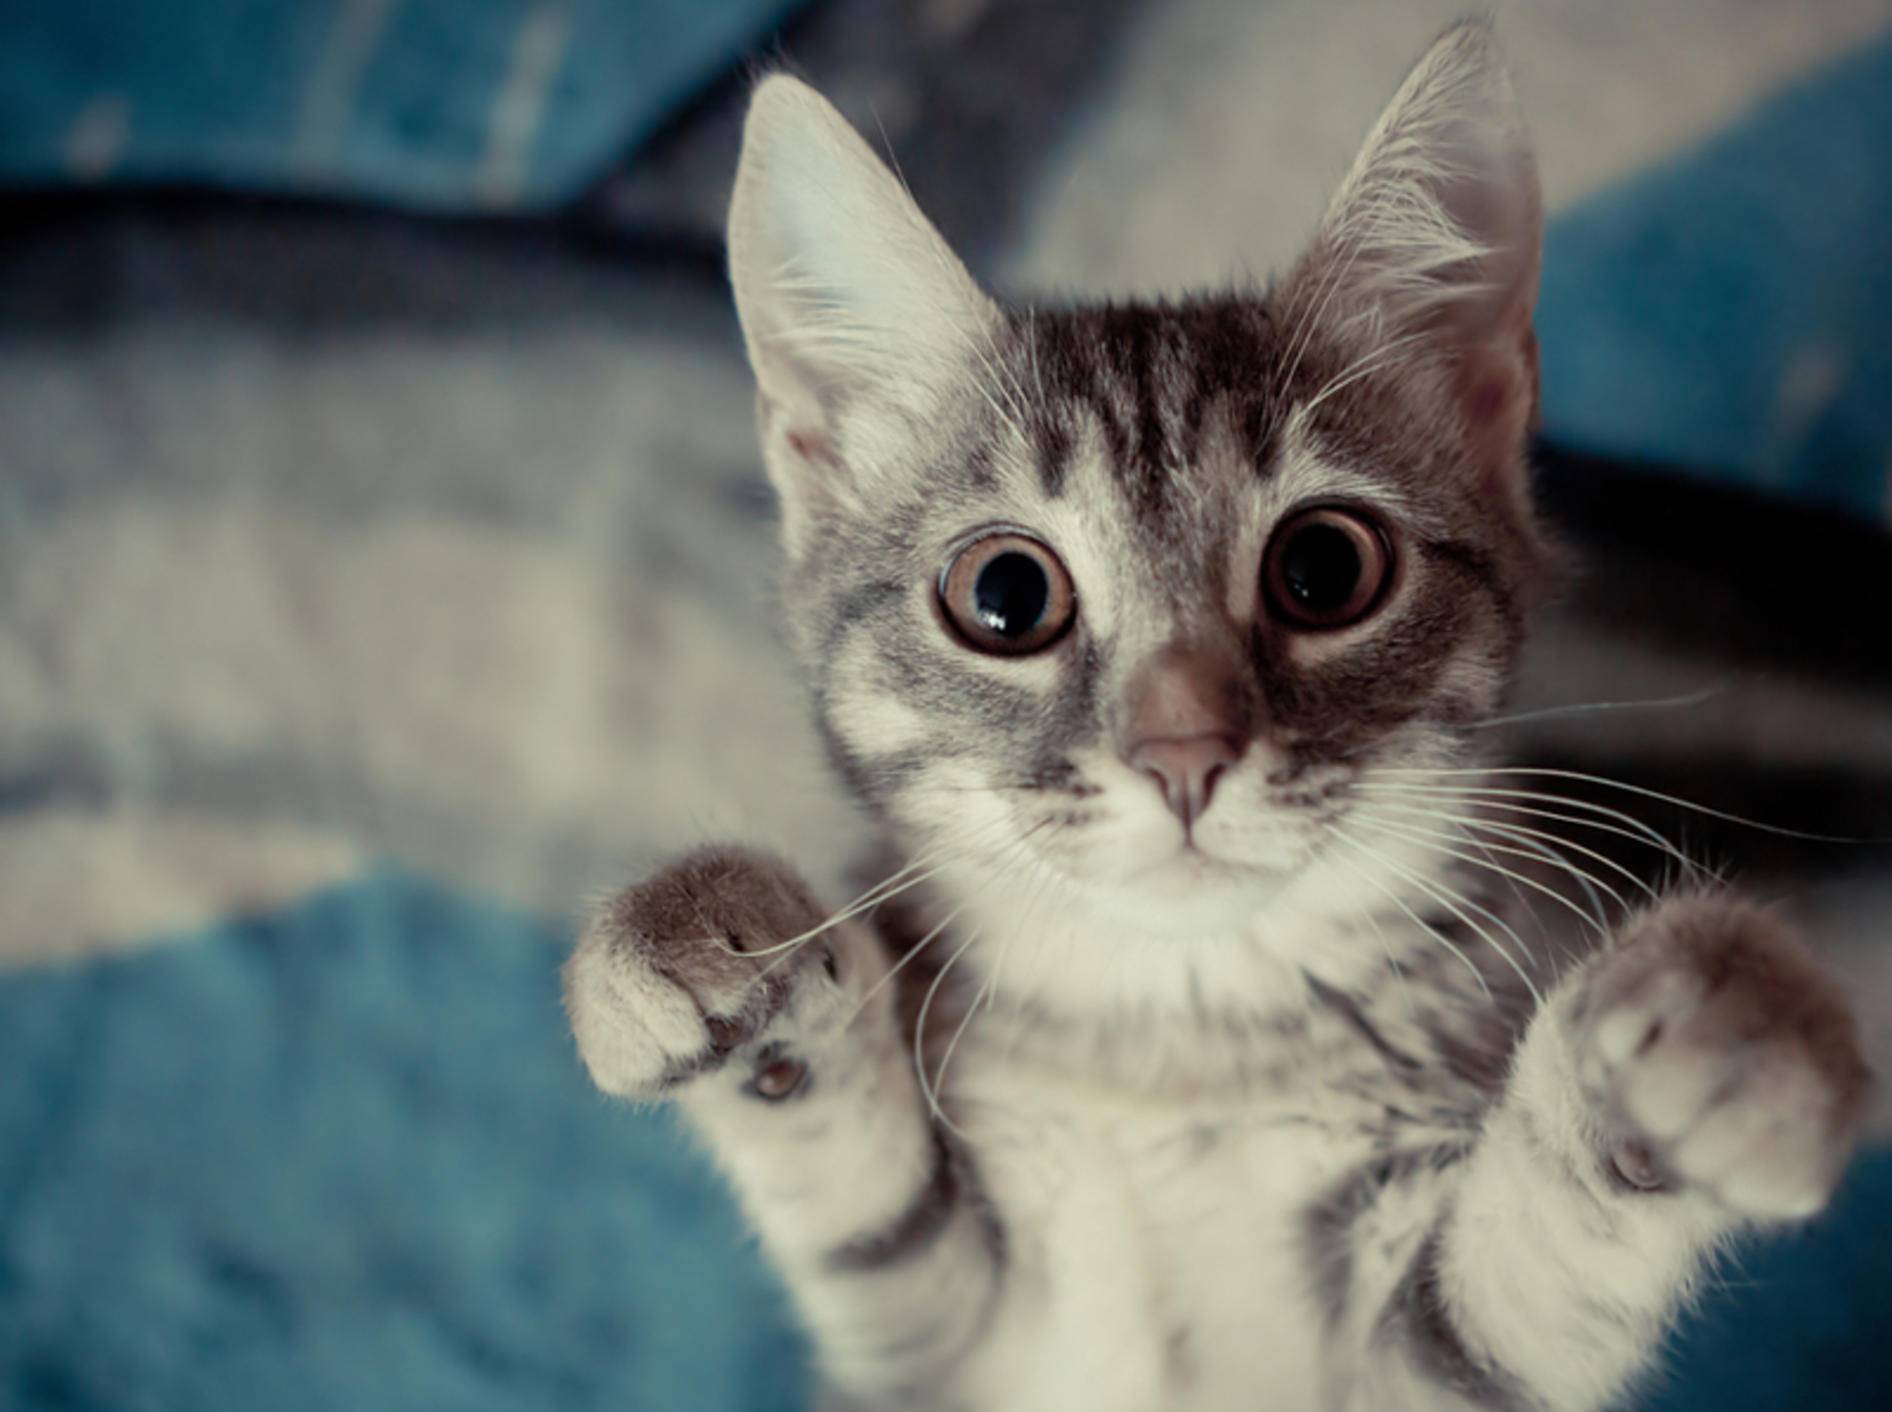 Auch Katze können Männchen machen lernen - Bild: Shutterstock / tribalmark